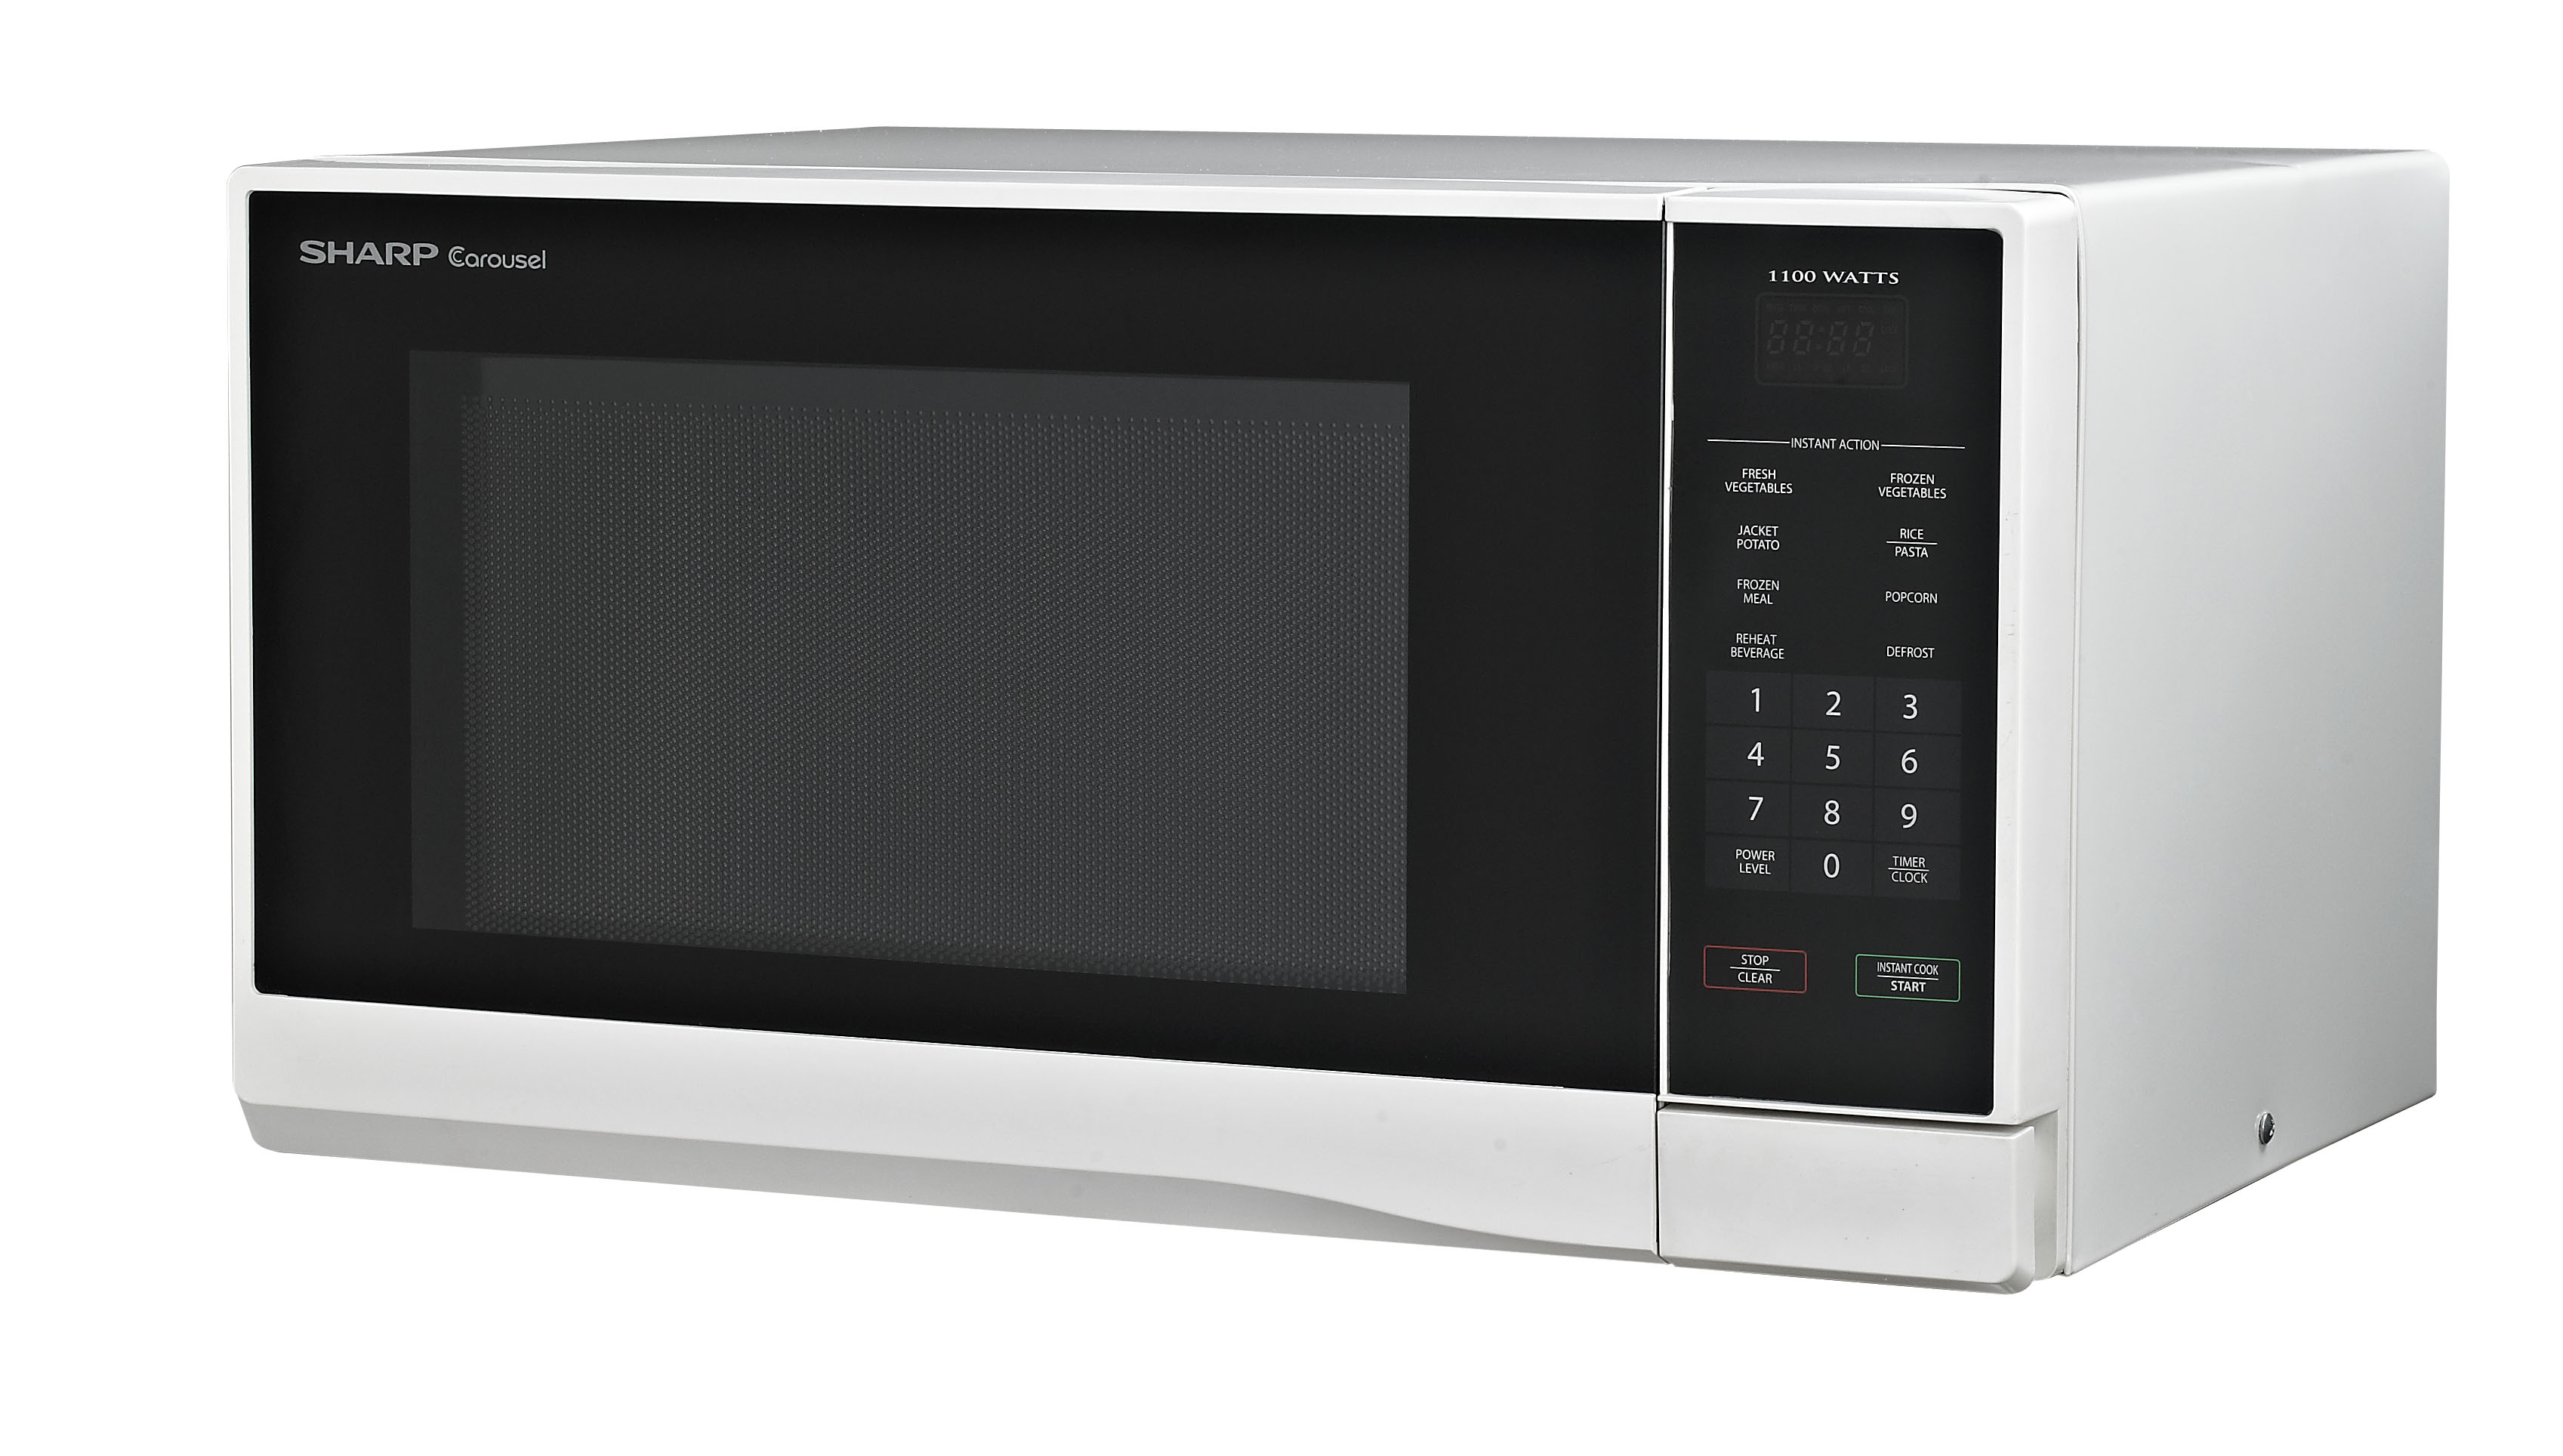 Midsized Microwave - White - 1,100W